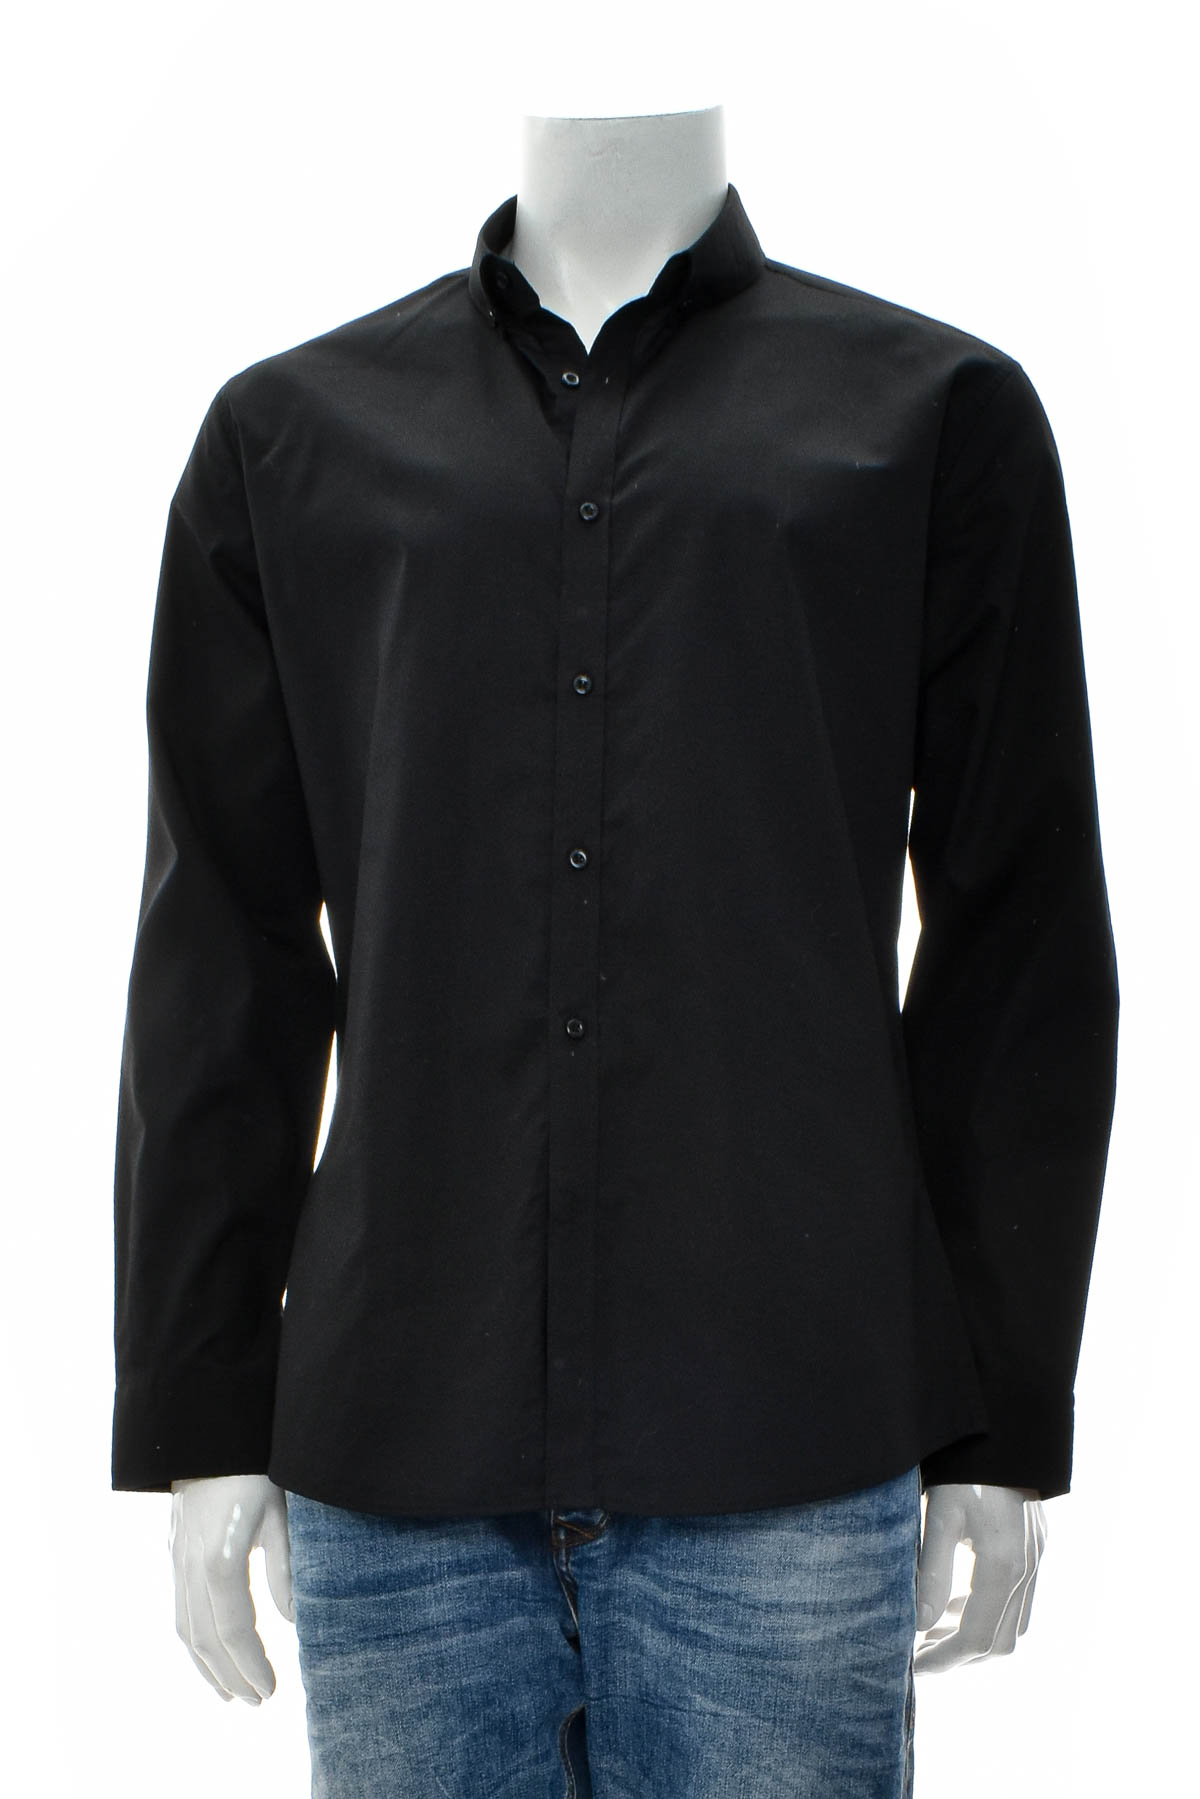 Ανδρικό πουκάμισο - CONNOR - 0